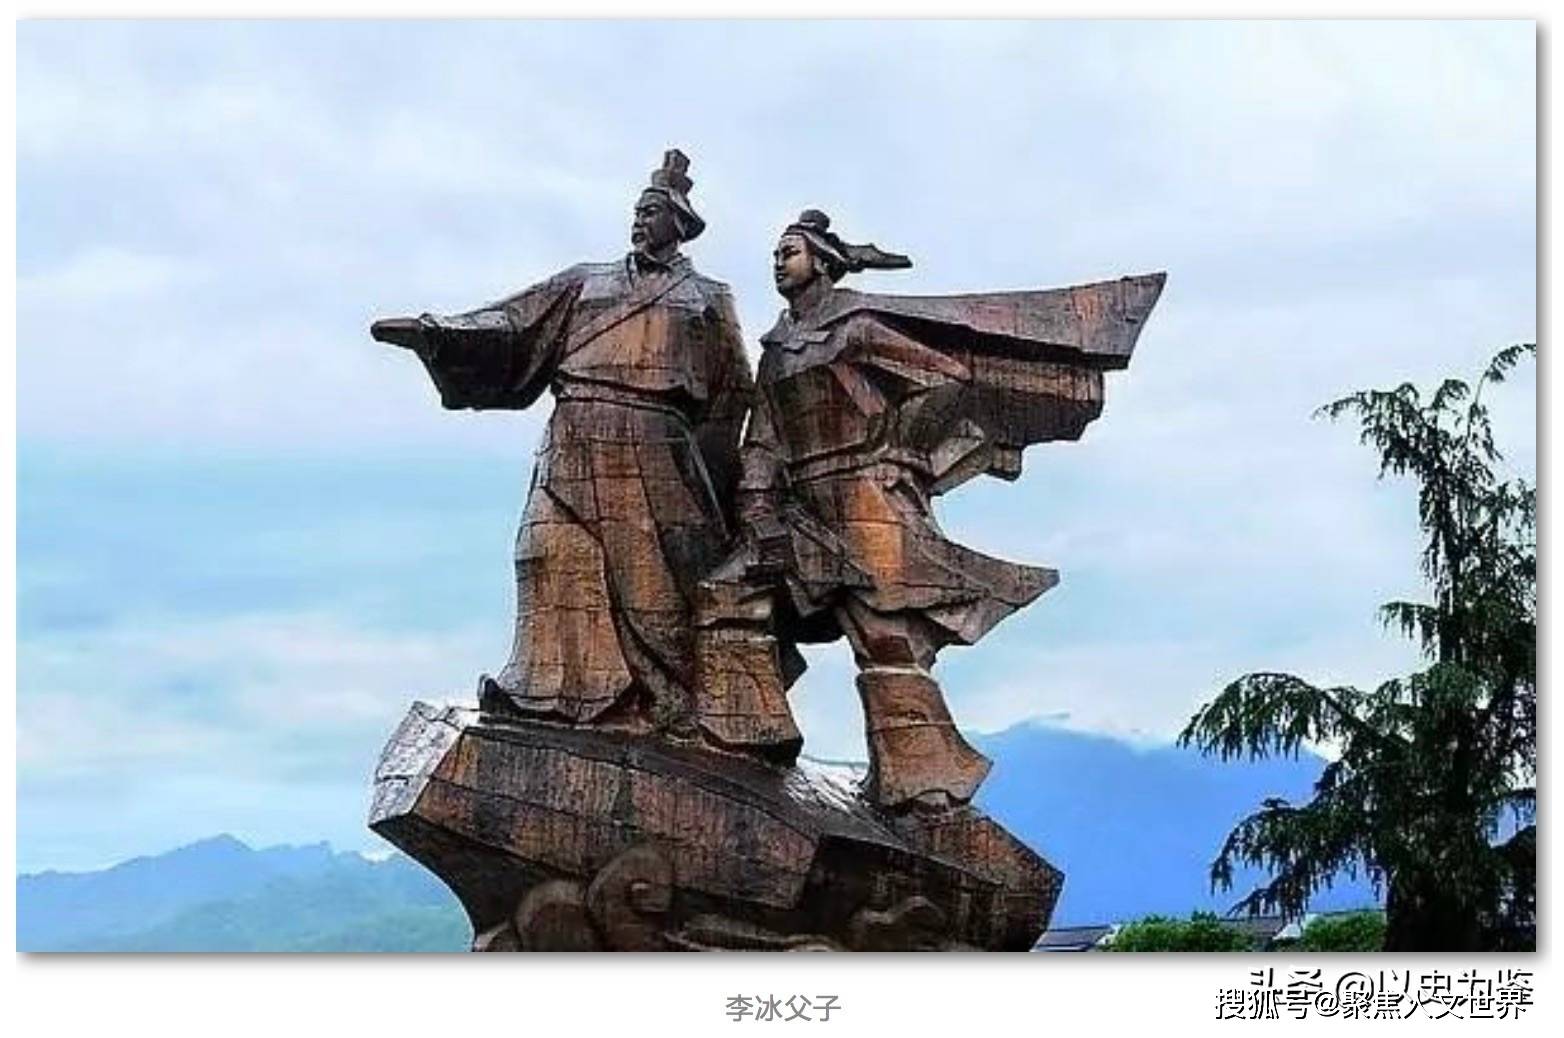 都江堰市首本数字动漫《李冰治水》获奖 -中国旅游新闻网